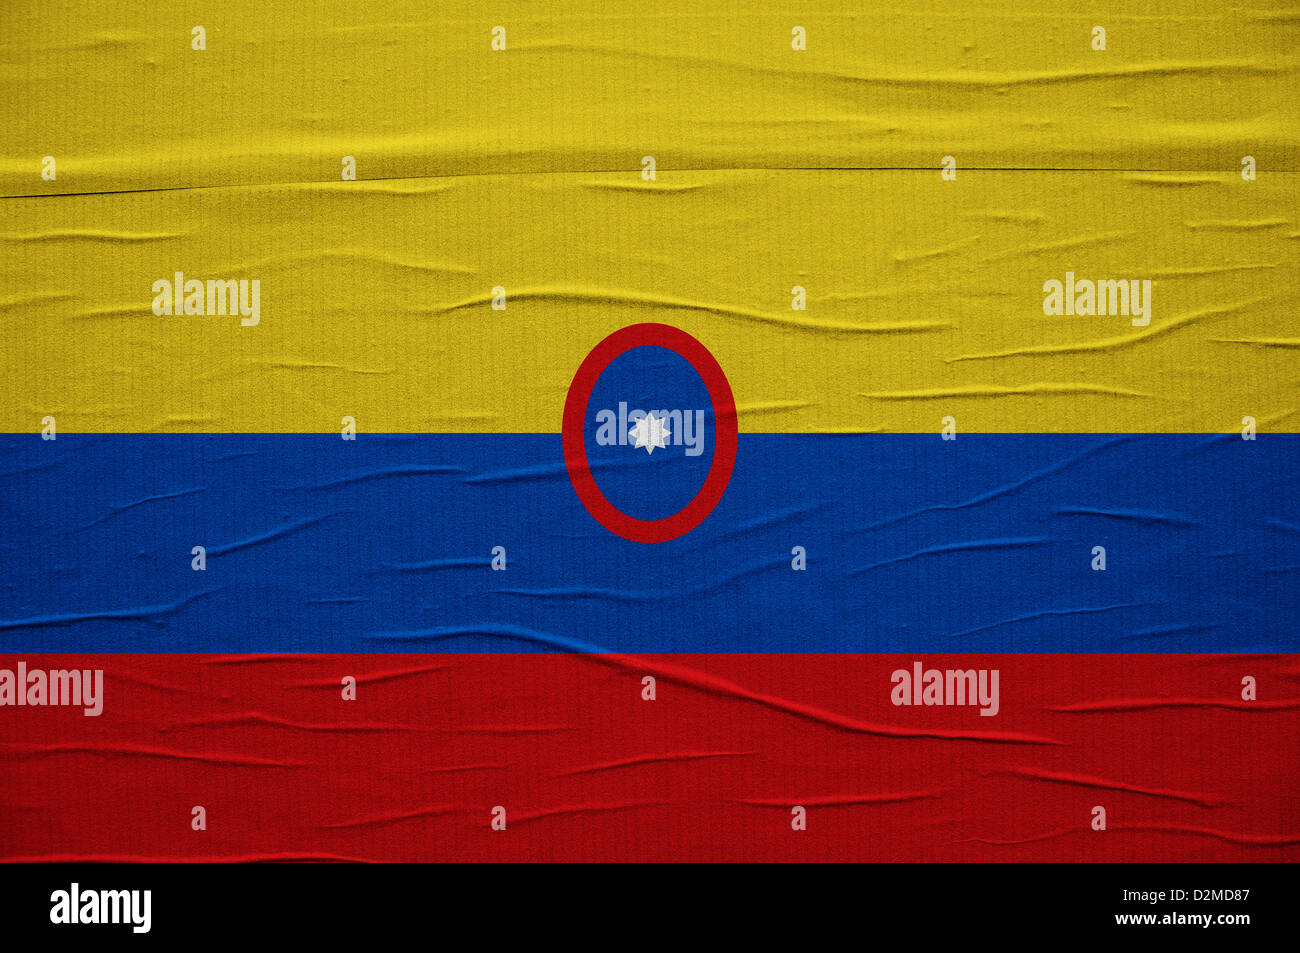 Grunge Colubian drapeau, l'image est une superposition de texture grunge détaillées Banque D'Images